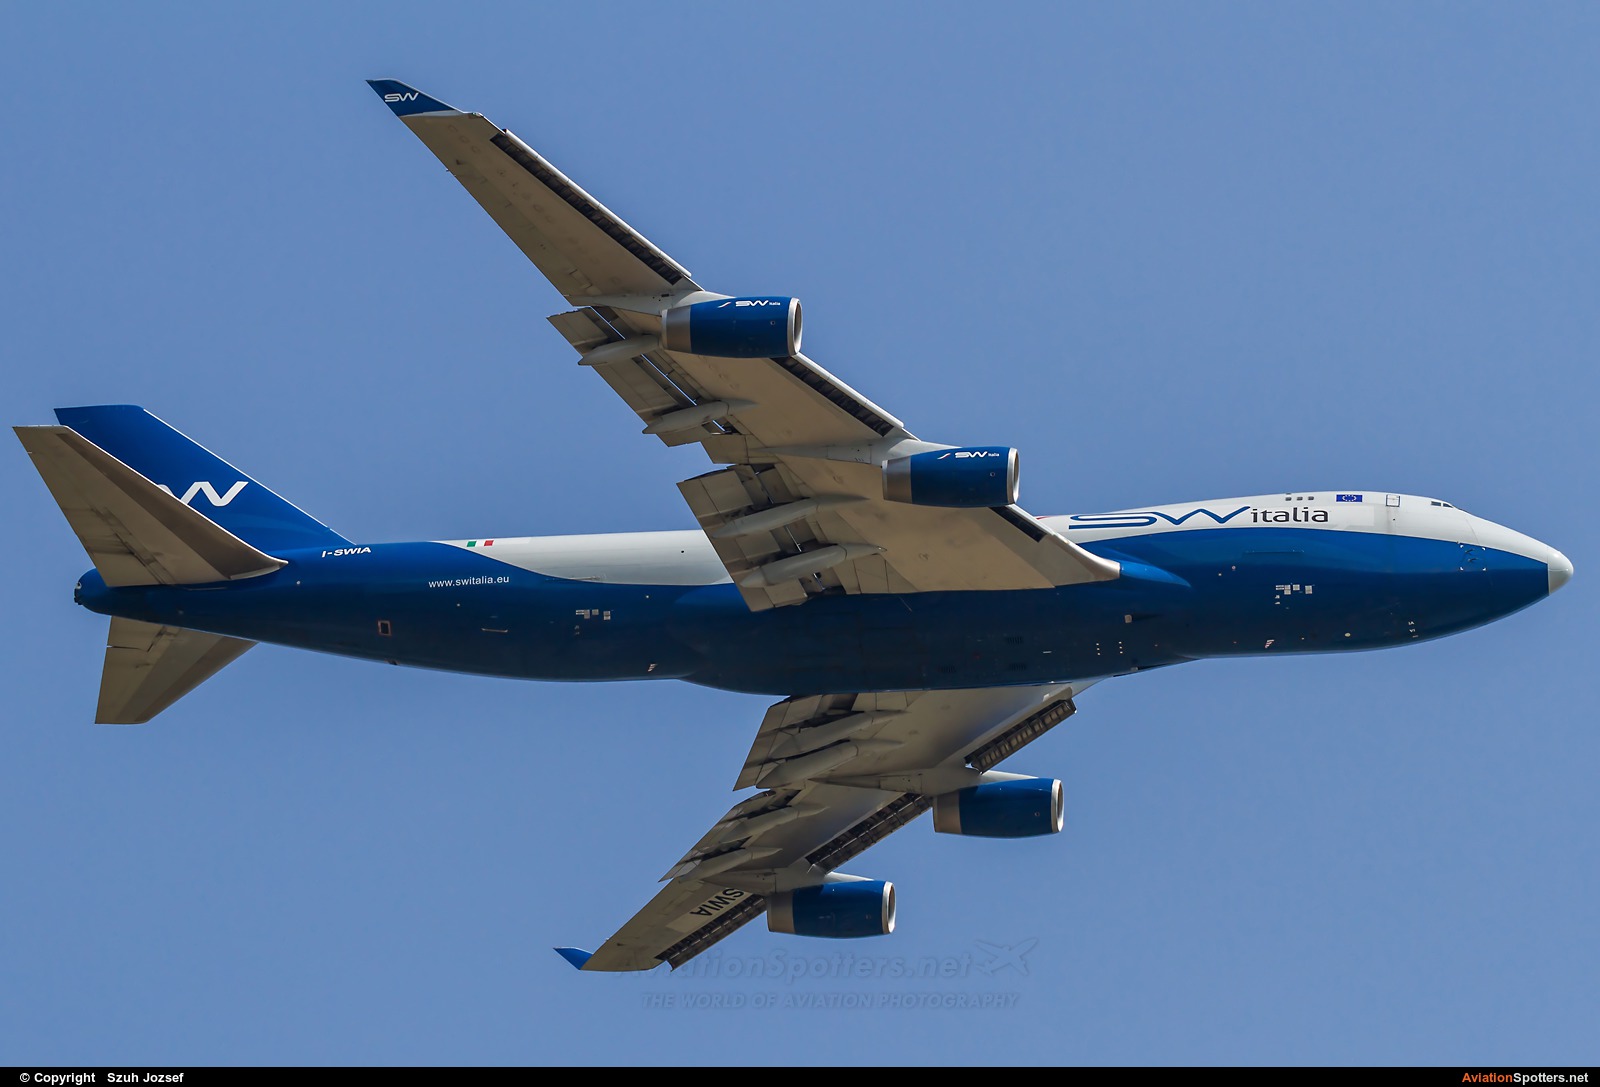 Silk Way Airlines  -  747-400  (I-SWIA) By Szuh Jozsef (szuh jozsef)